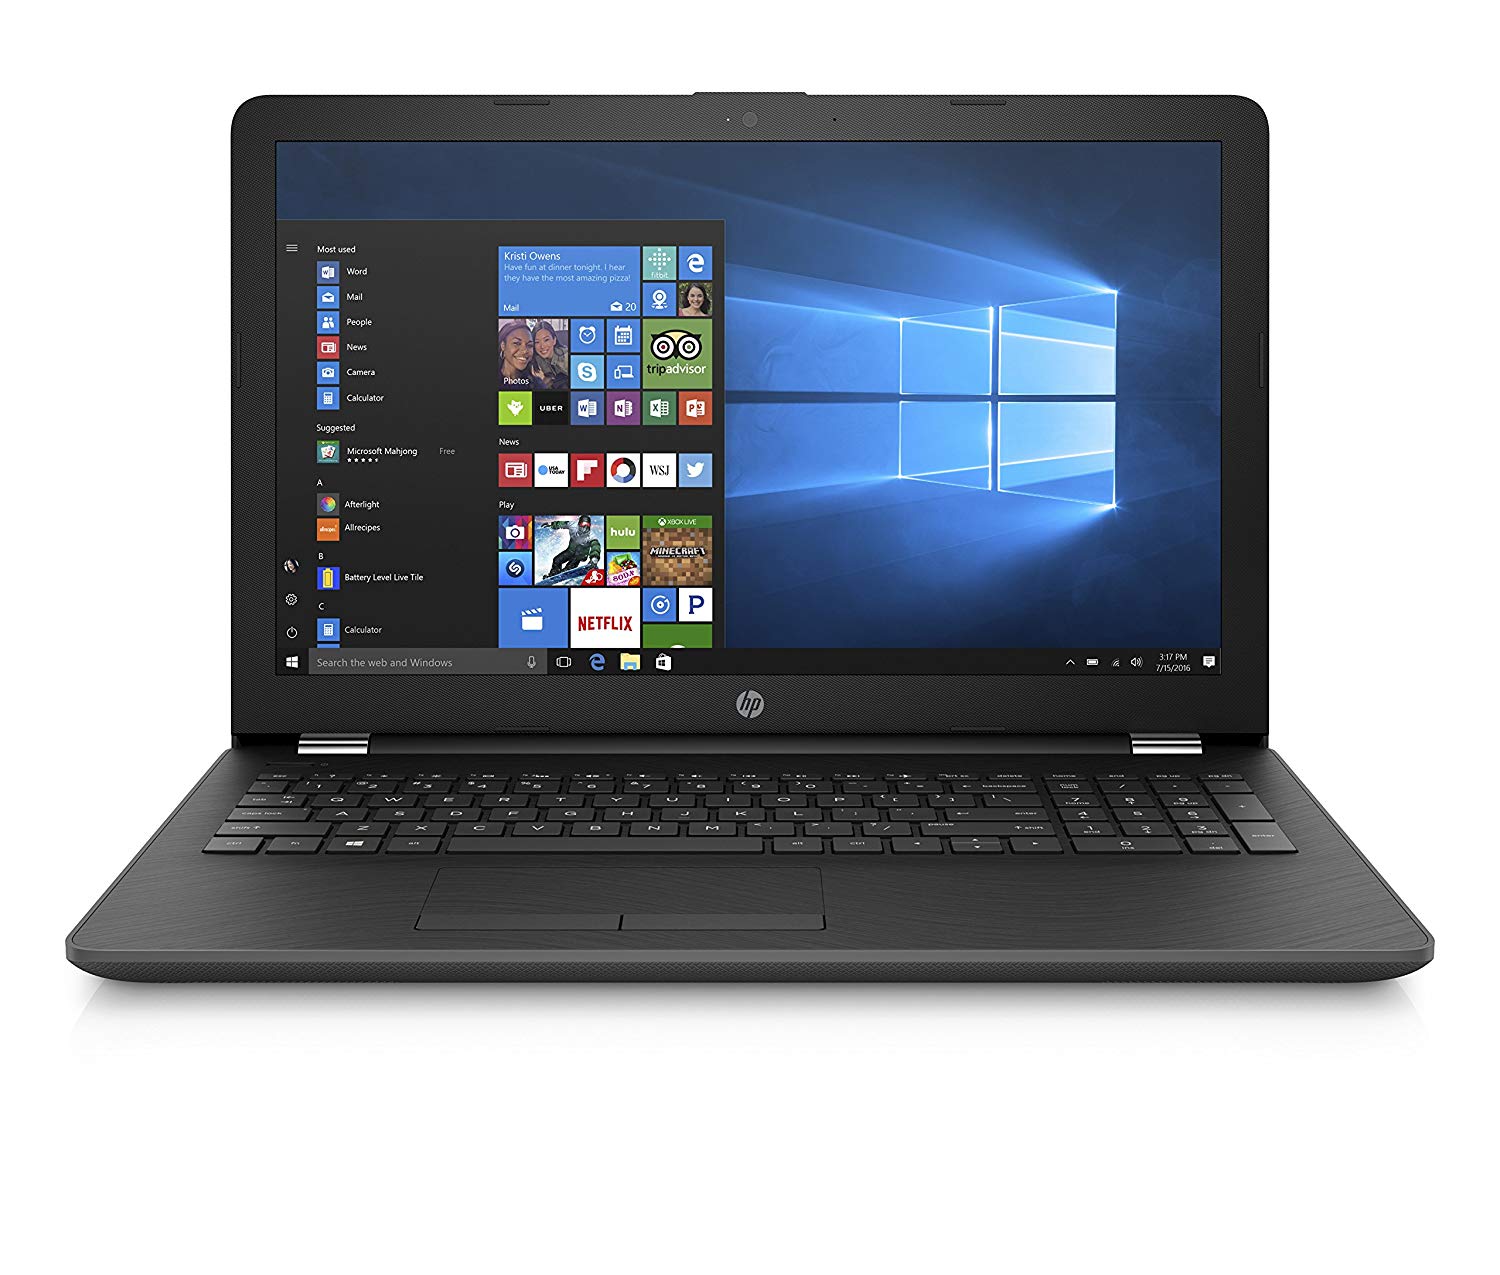 HP PC 15-bs000nl Notebook da 15.6", Pentium N3710, RAM 4 GB, HDD 500 GB, Intel HD 405, Grigio Fumo